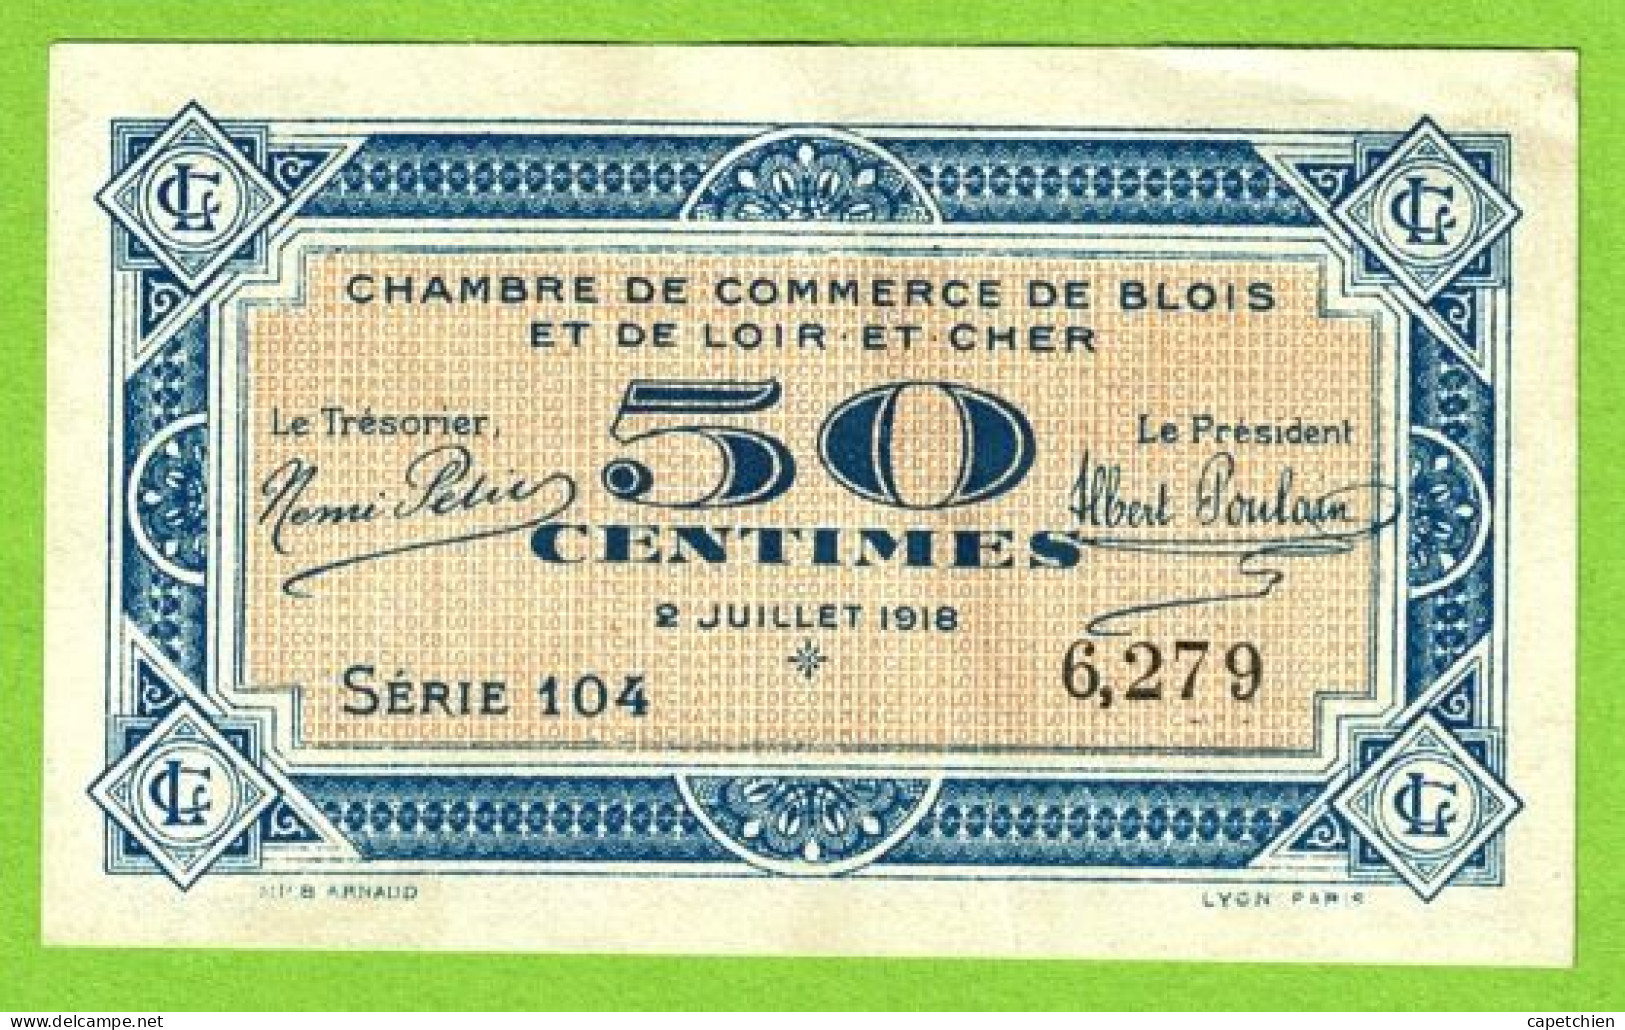 FRANCE / CHAMBRES De COMMERCE D'ORLEANS Et De BLOIS/ 50 CENTS/ 2 JUILLET 1918 / N° 6,279  / SERIE 104 / NEUF - Camera Di Commercio